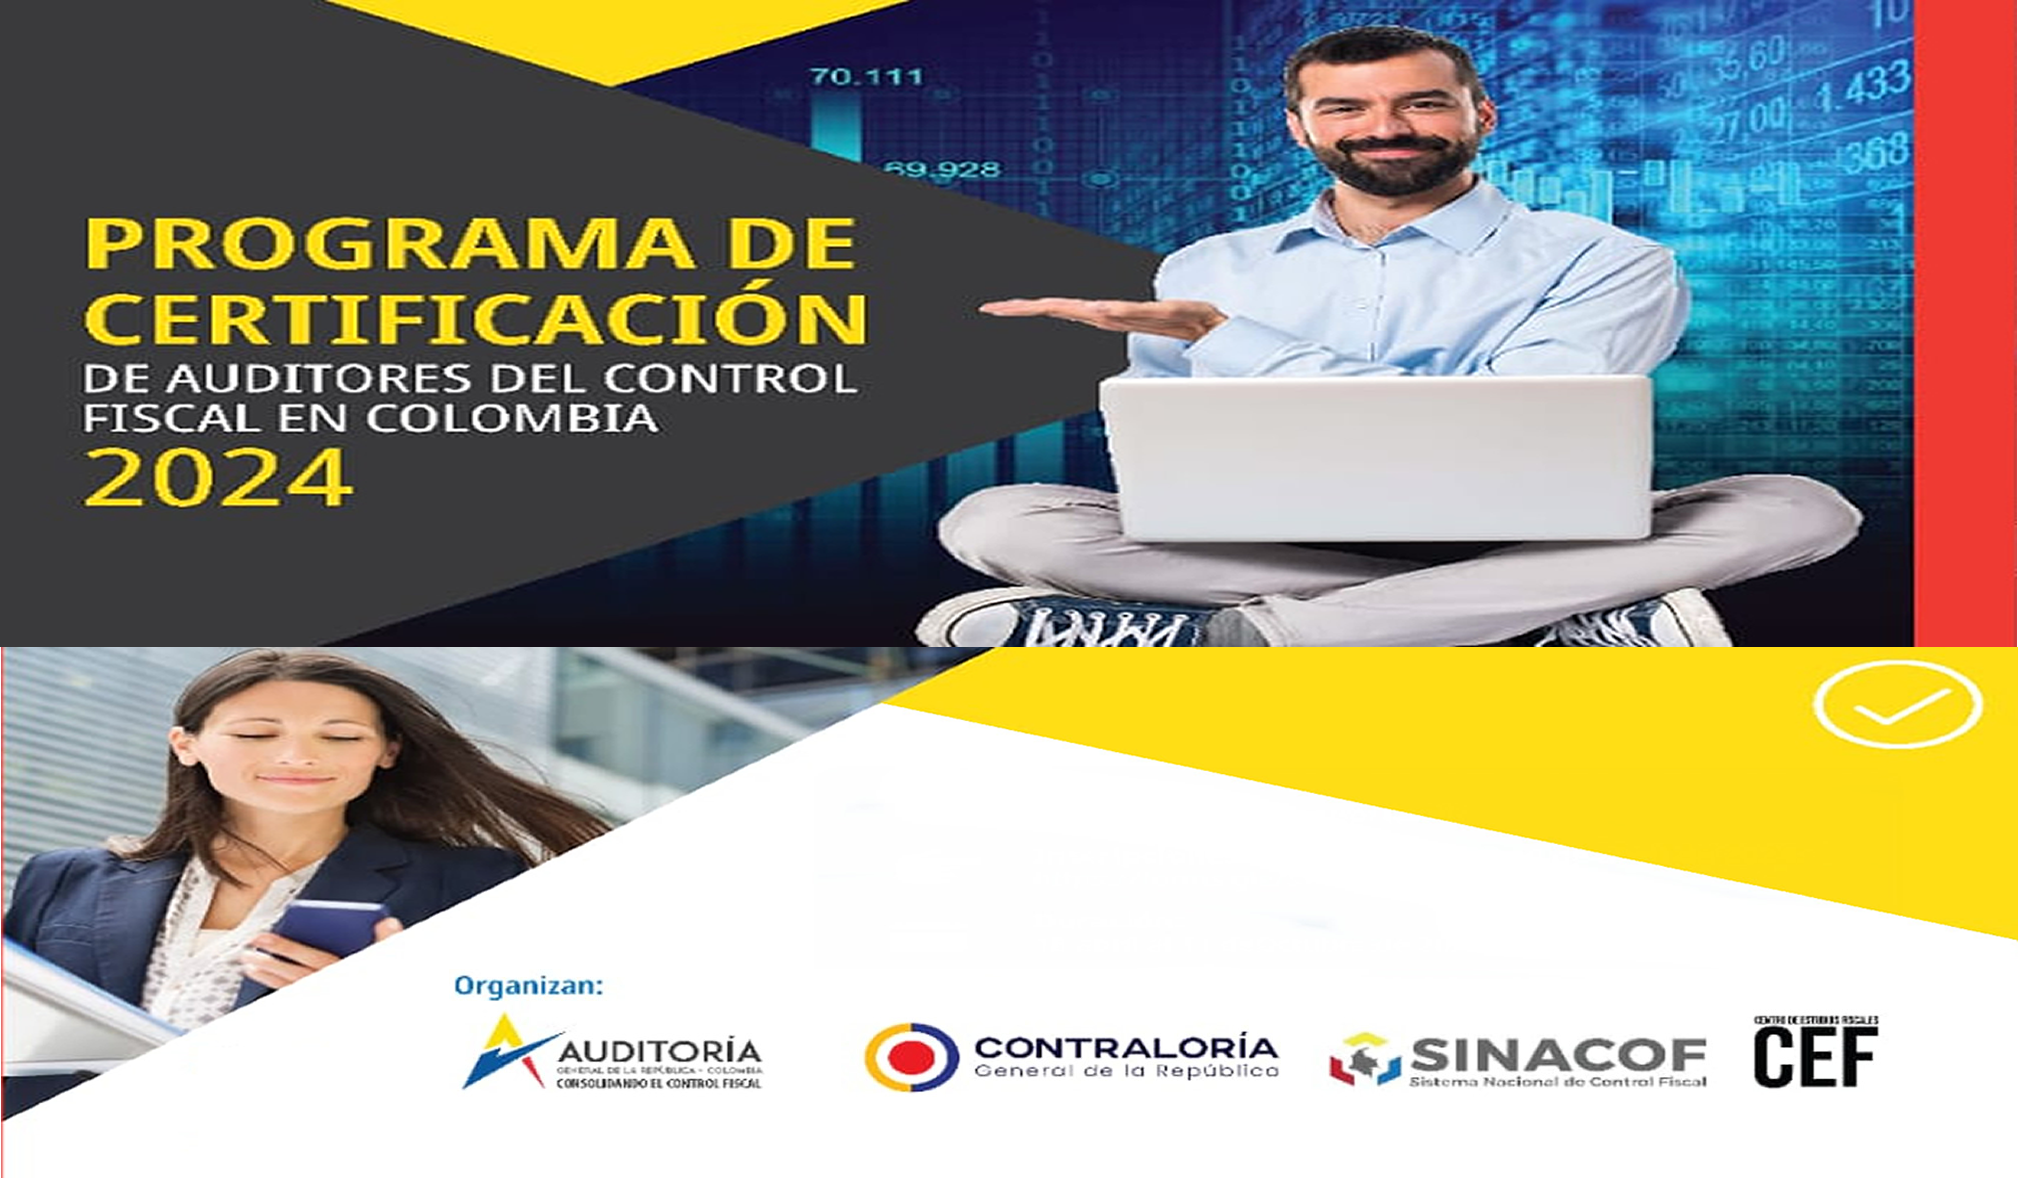 PROGRAMA DE CERTIFICACIÓN DE AUDITORES DEL CONTROL FISCAL EN COLOMBIA 2024